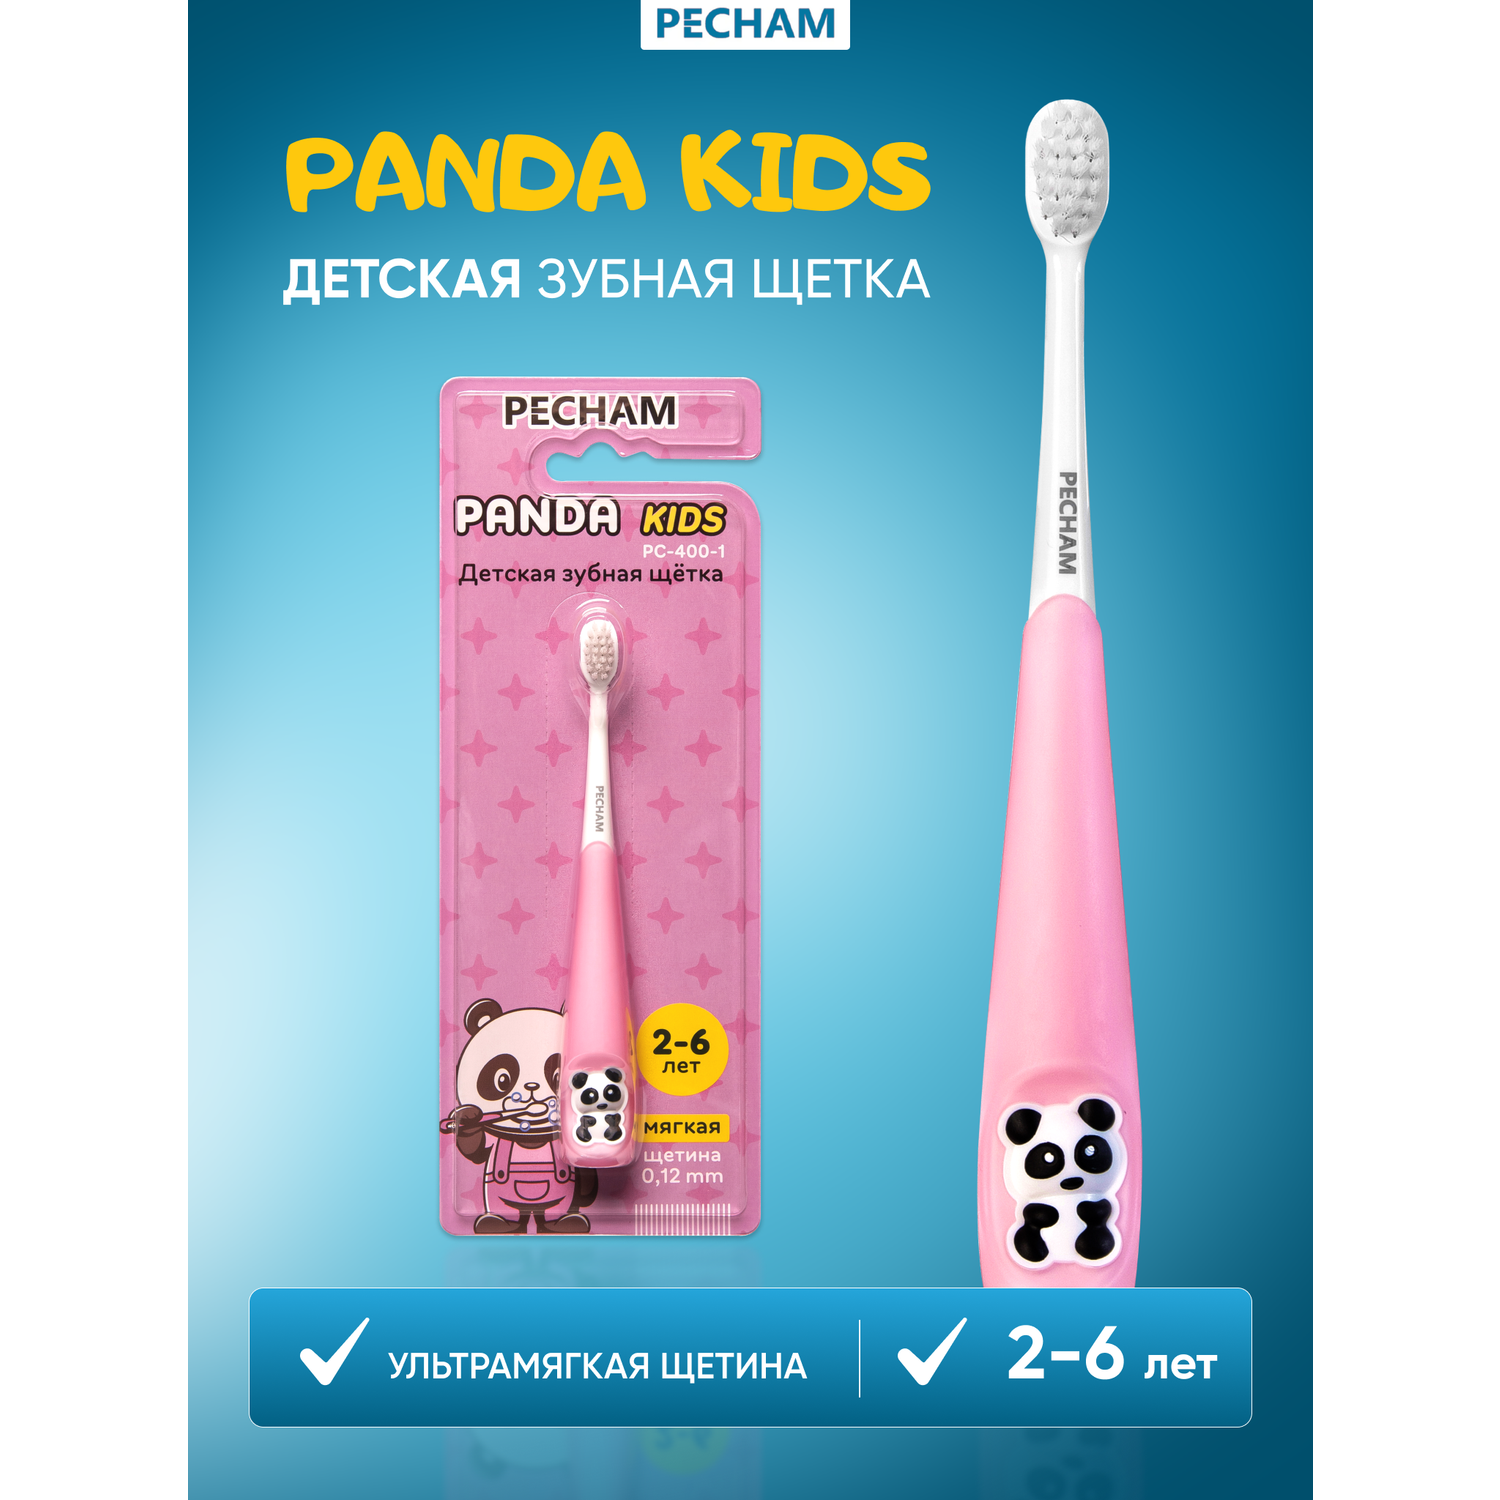 Детская зубная щетка PECHAM Panda Kids PC-400-1 - фото 1